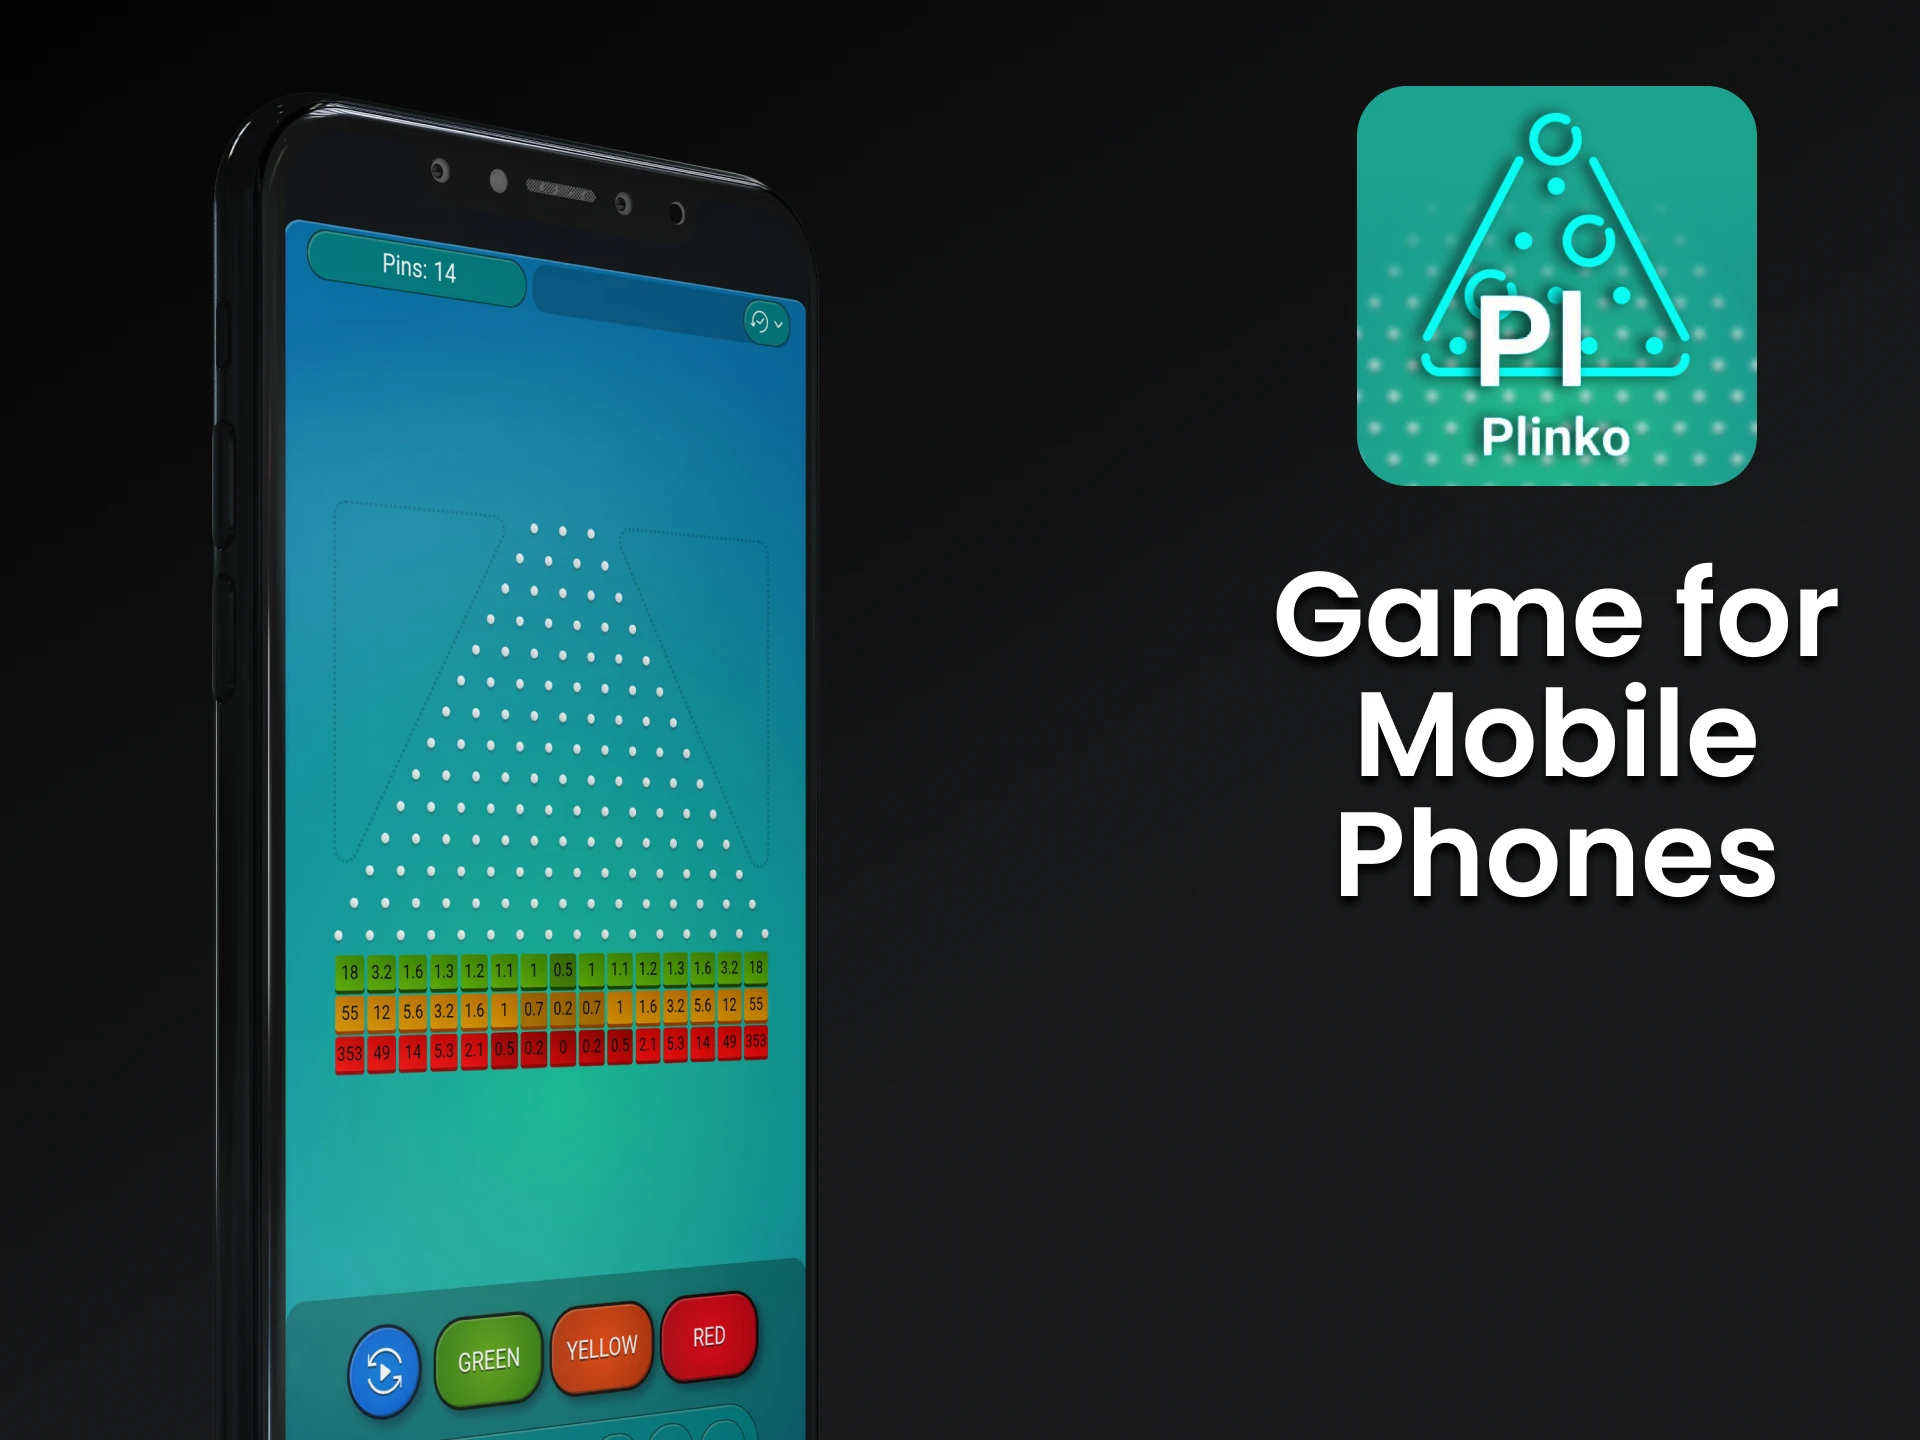 Play Plinko through an app on your phone.